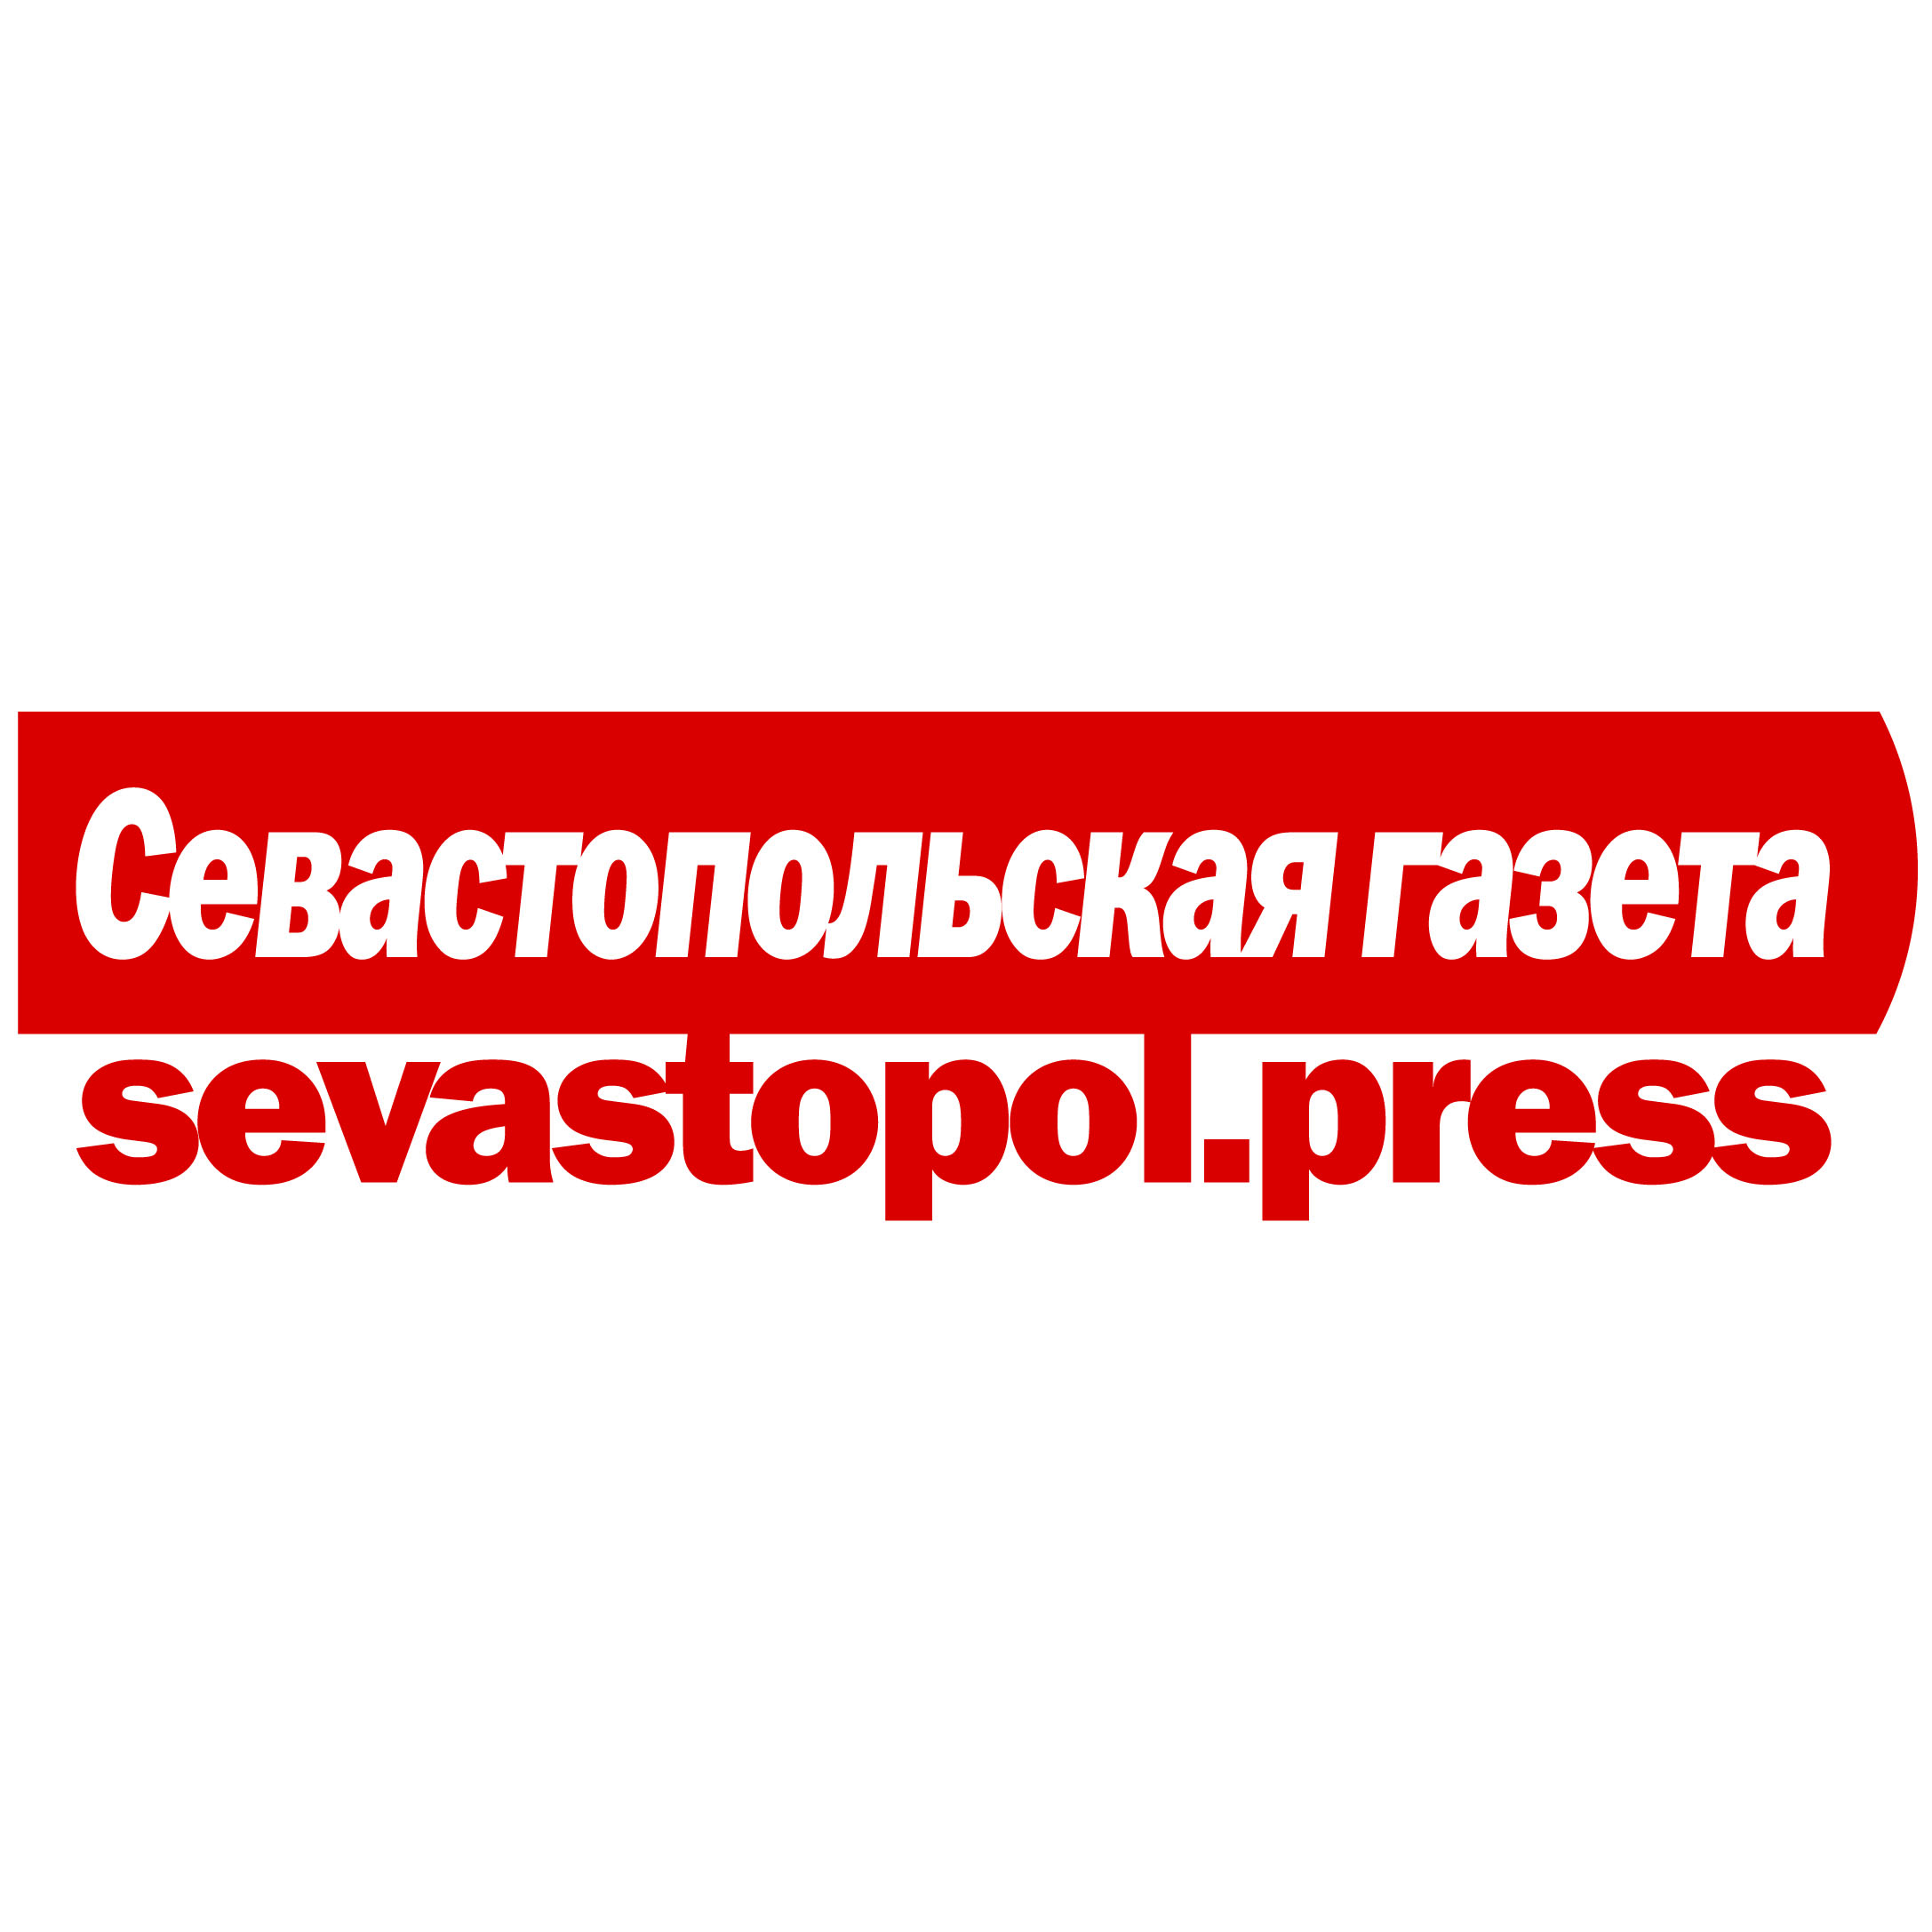 Севастопольская газета, еженедельник, г. Севастополь